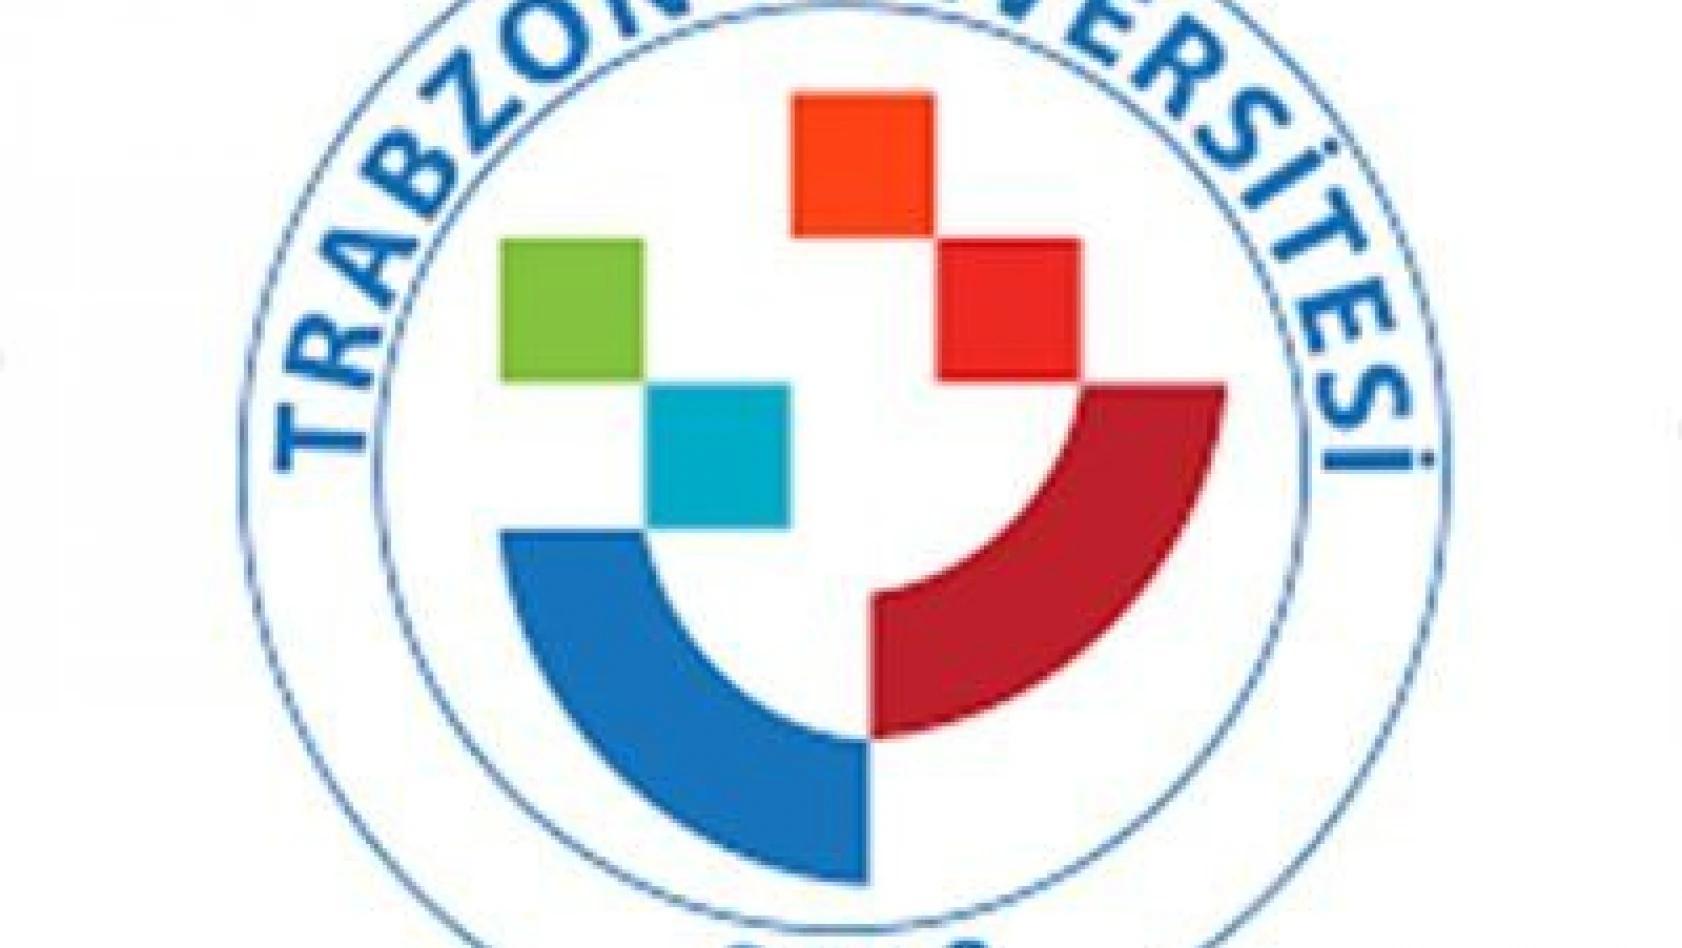 Trabzon Üniversitesi Araştırma Görevlisi ve Öğretim Görevlisi alım ilanı